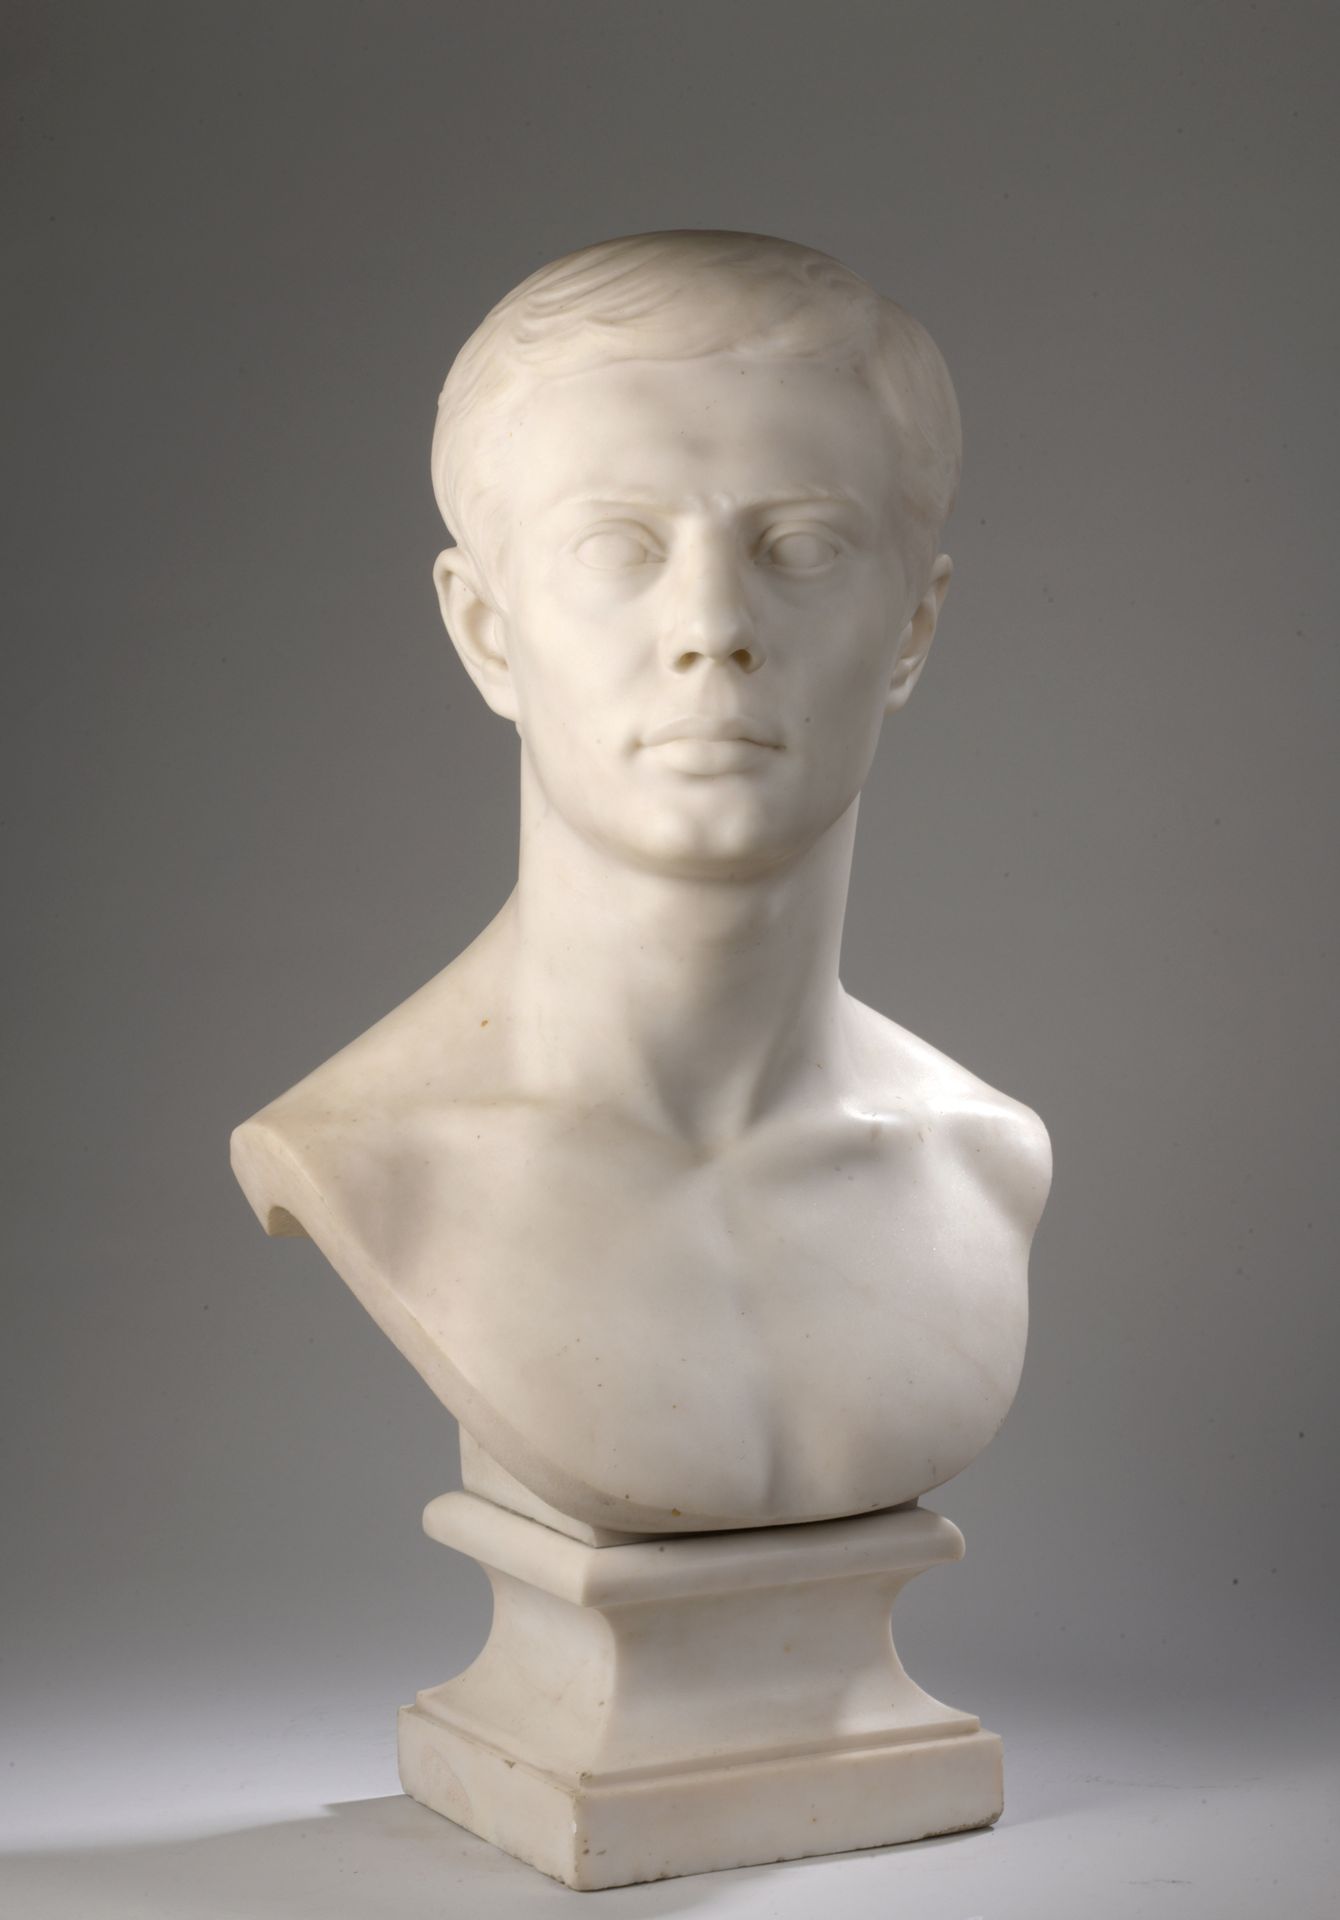 Null Henri Frédéric ISELIN (1825-1905)

Busto de joven romano u observación 

Bu&hellip;